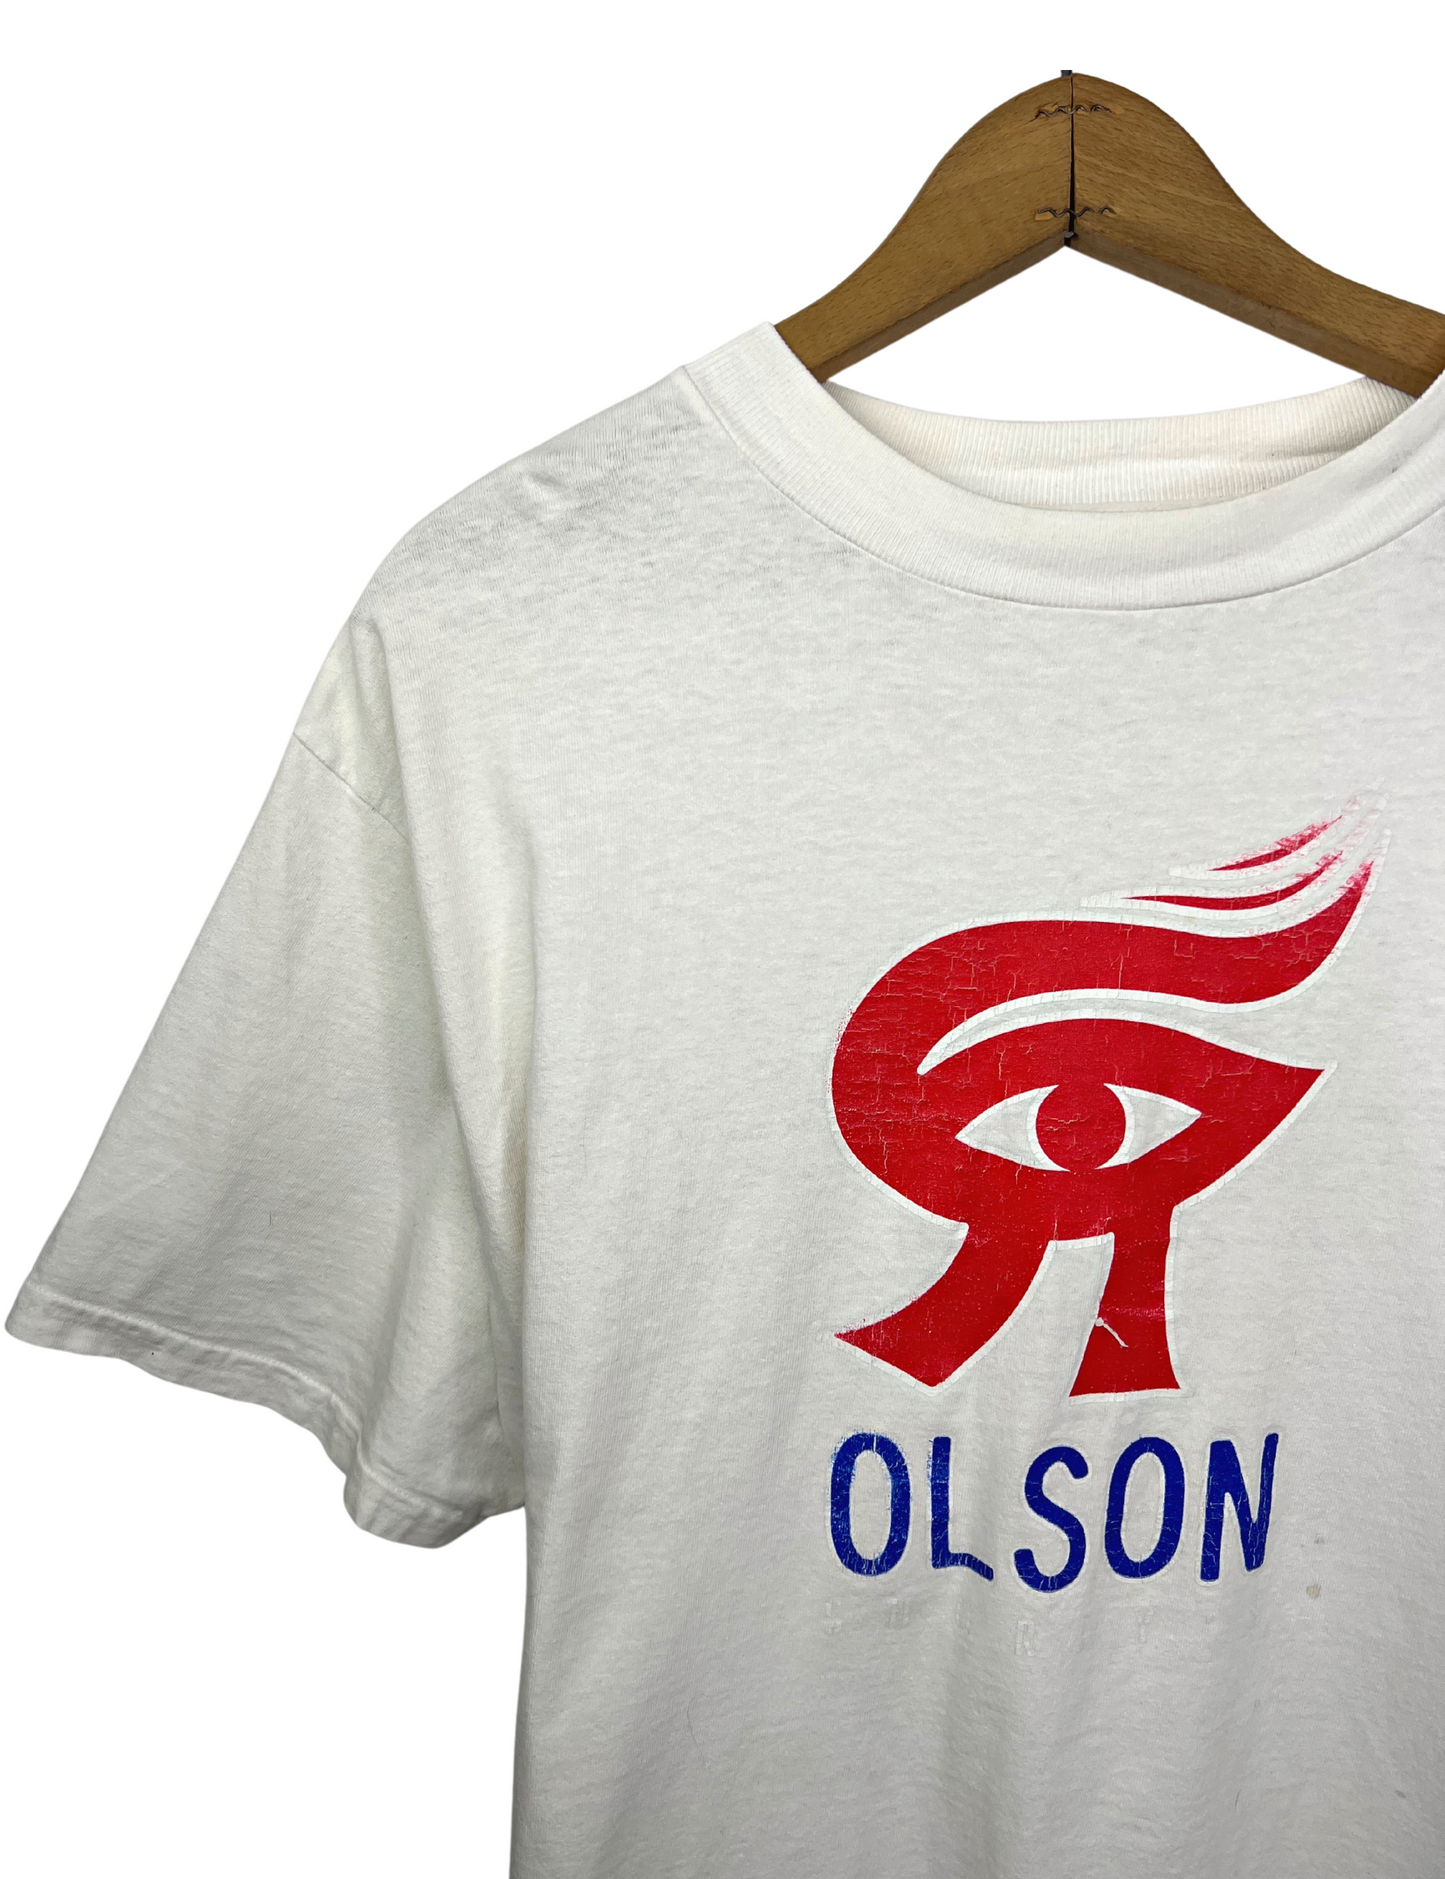 90’s Olson Shortys Deck Skateboarding Logo T-shirt